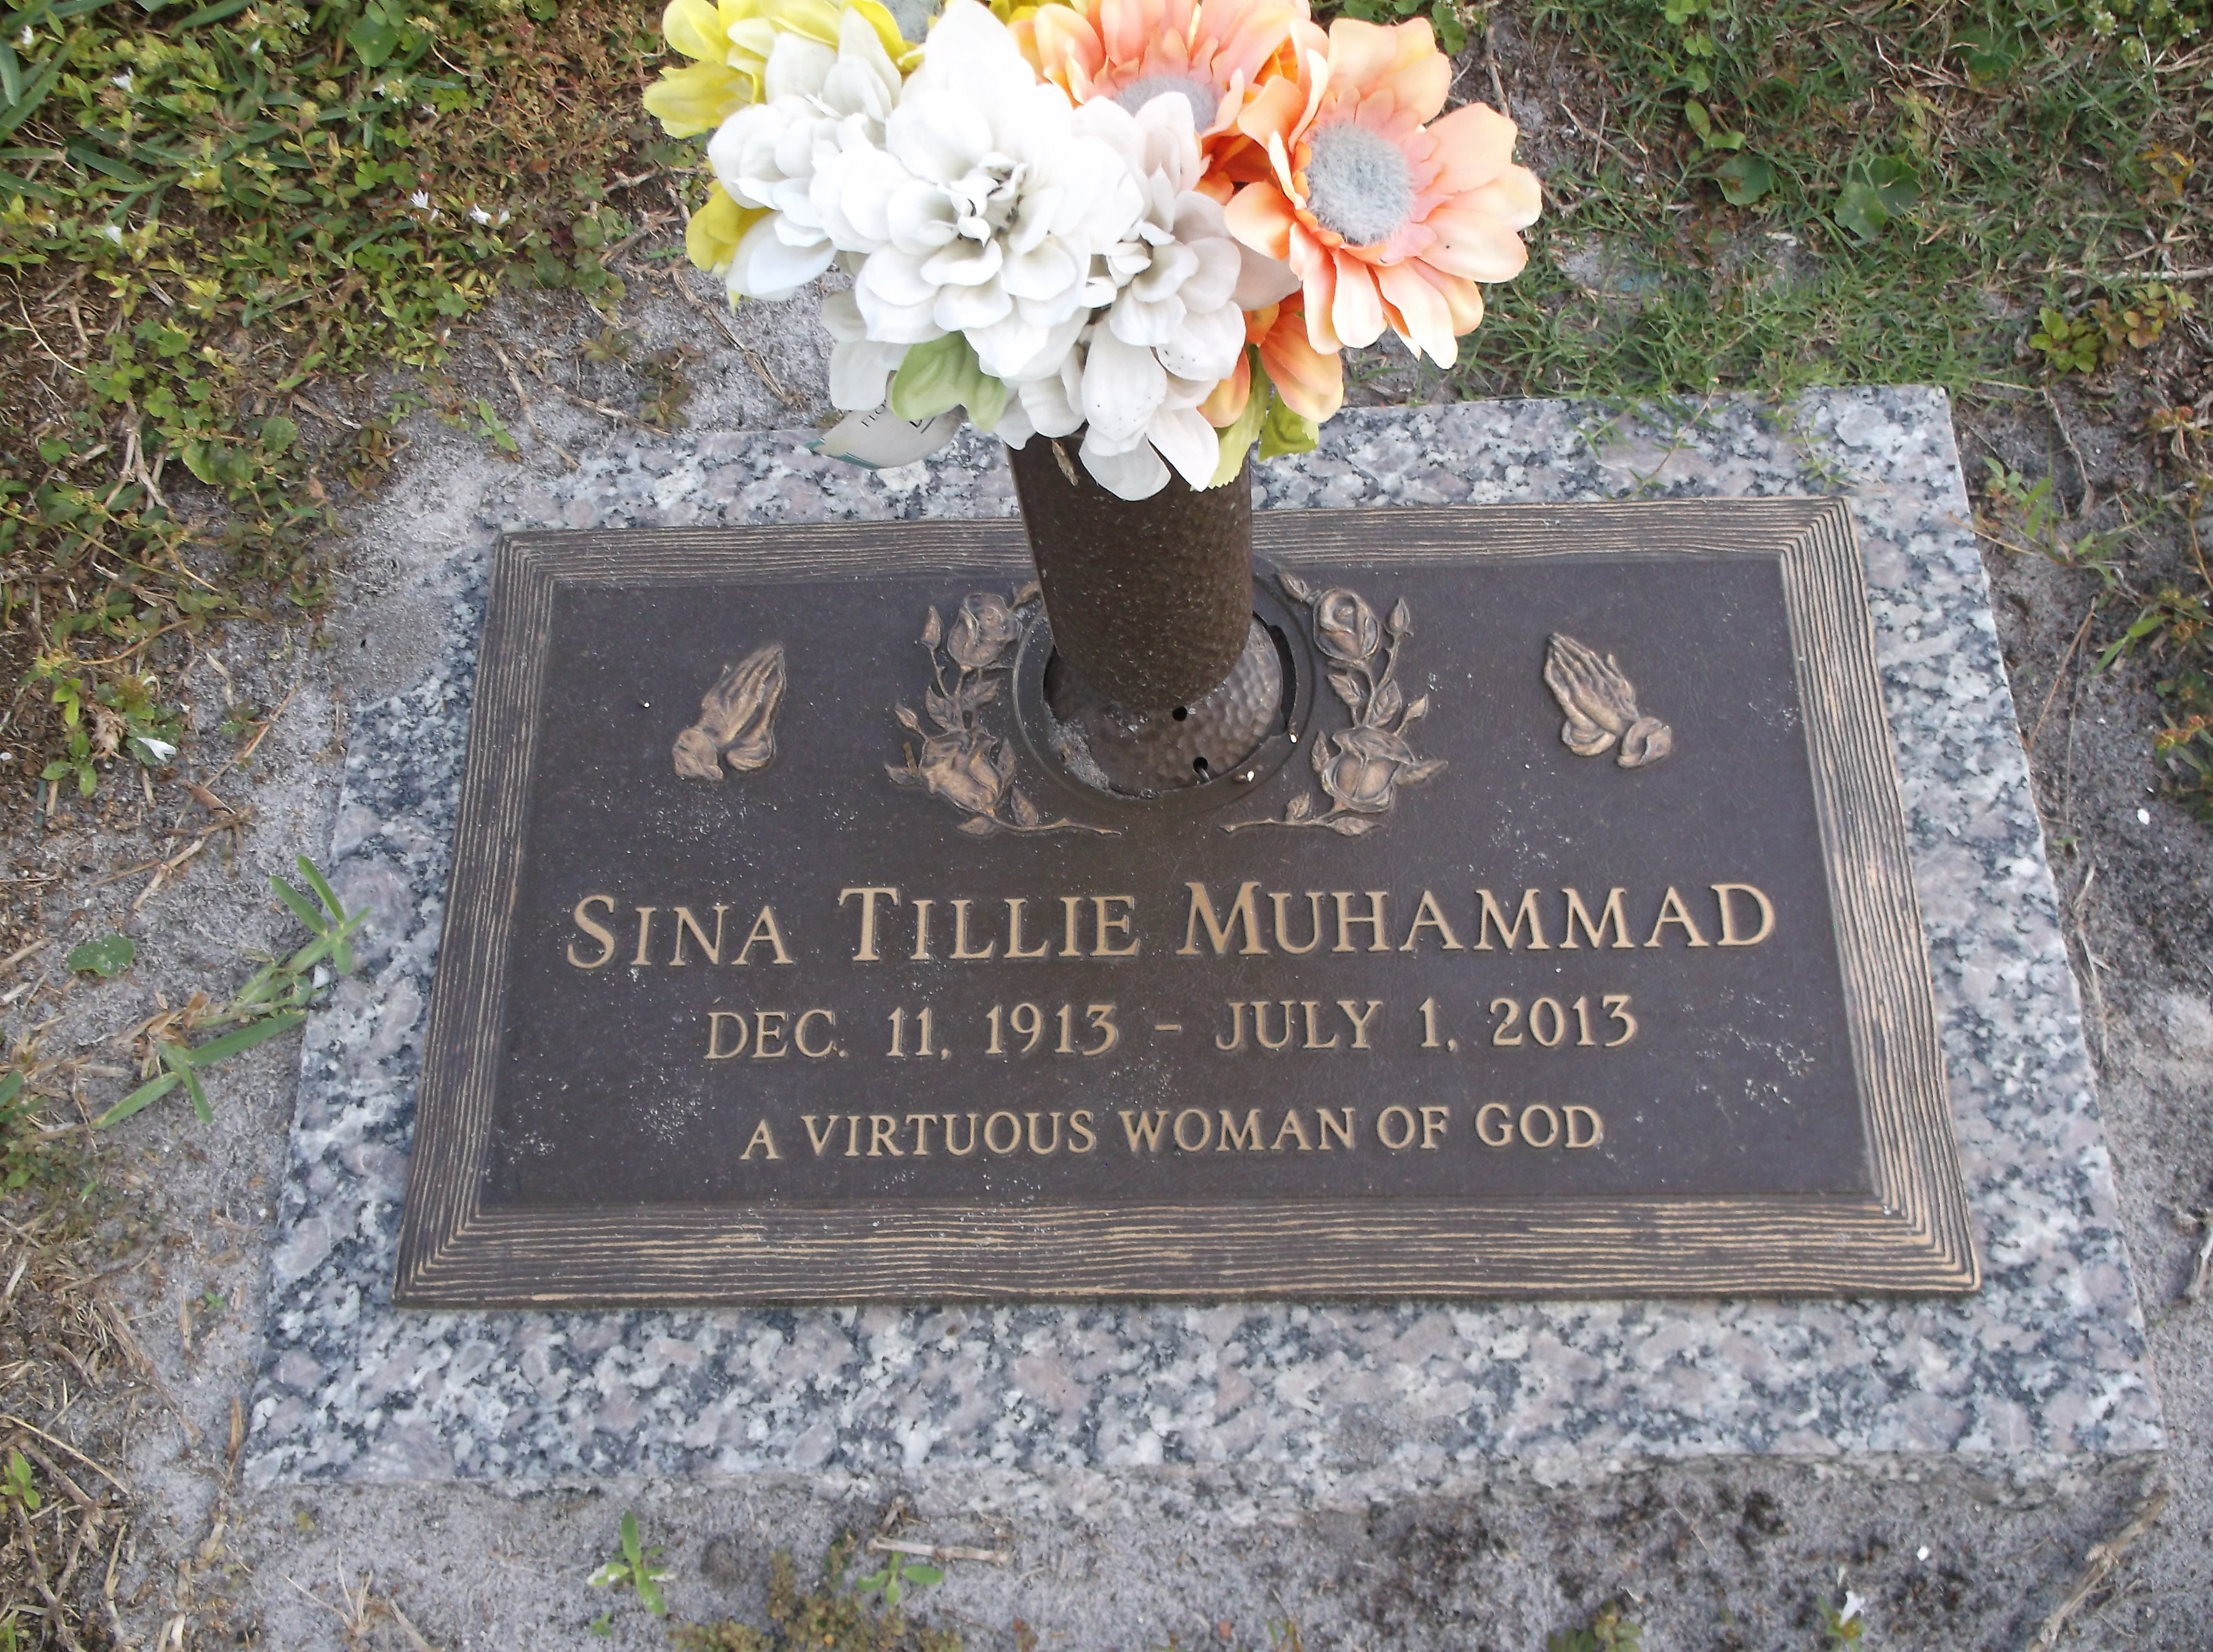 Sina Tillie Muhammad